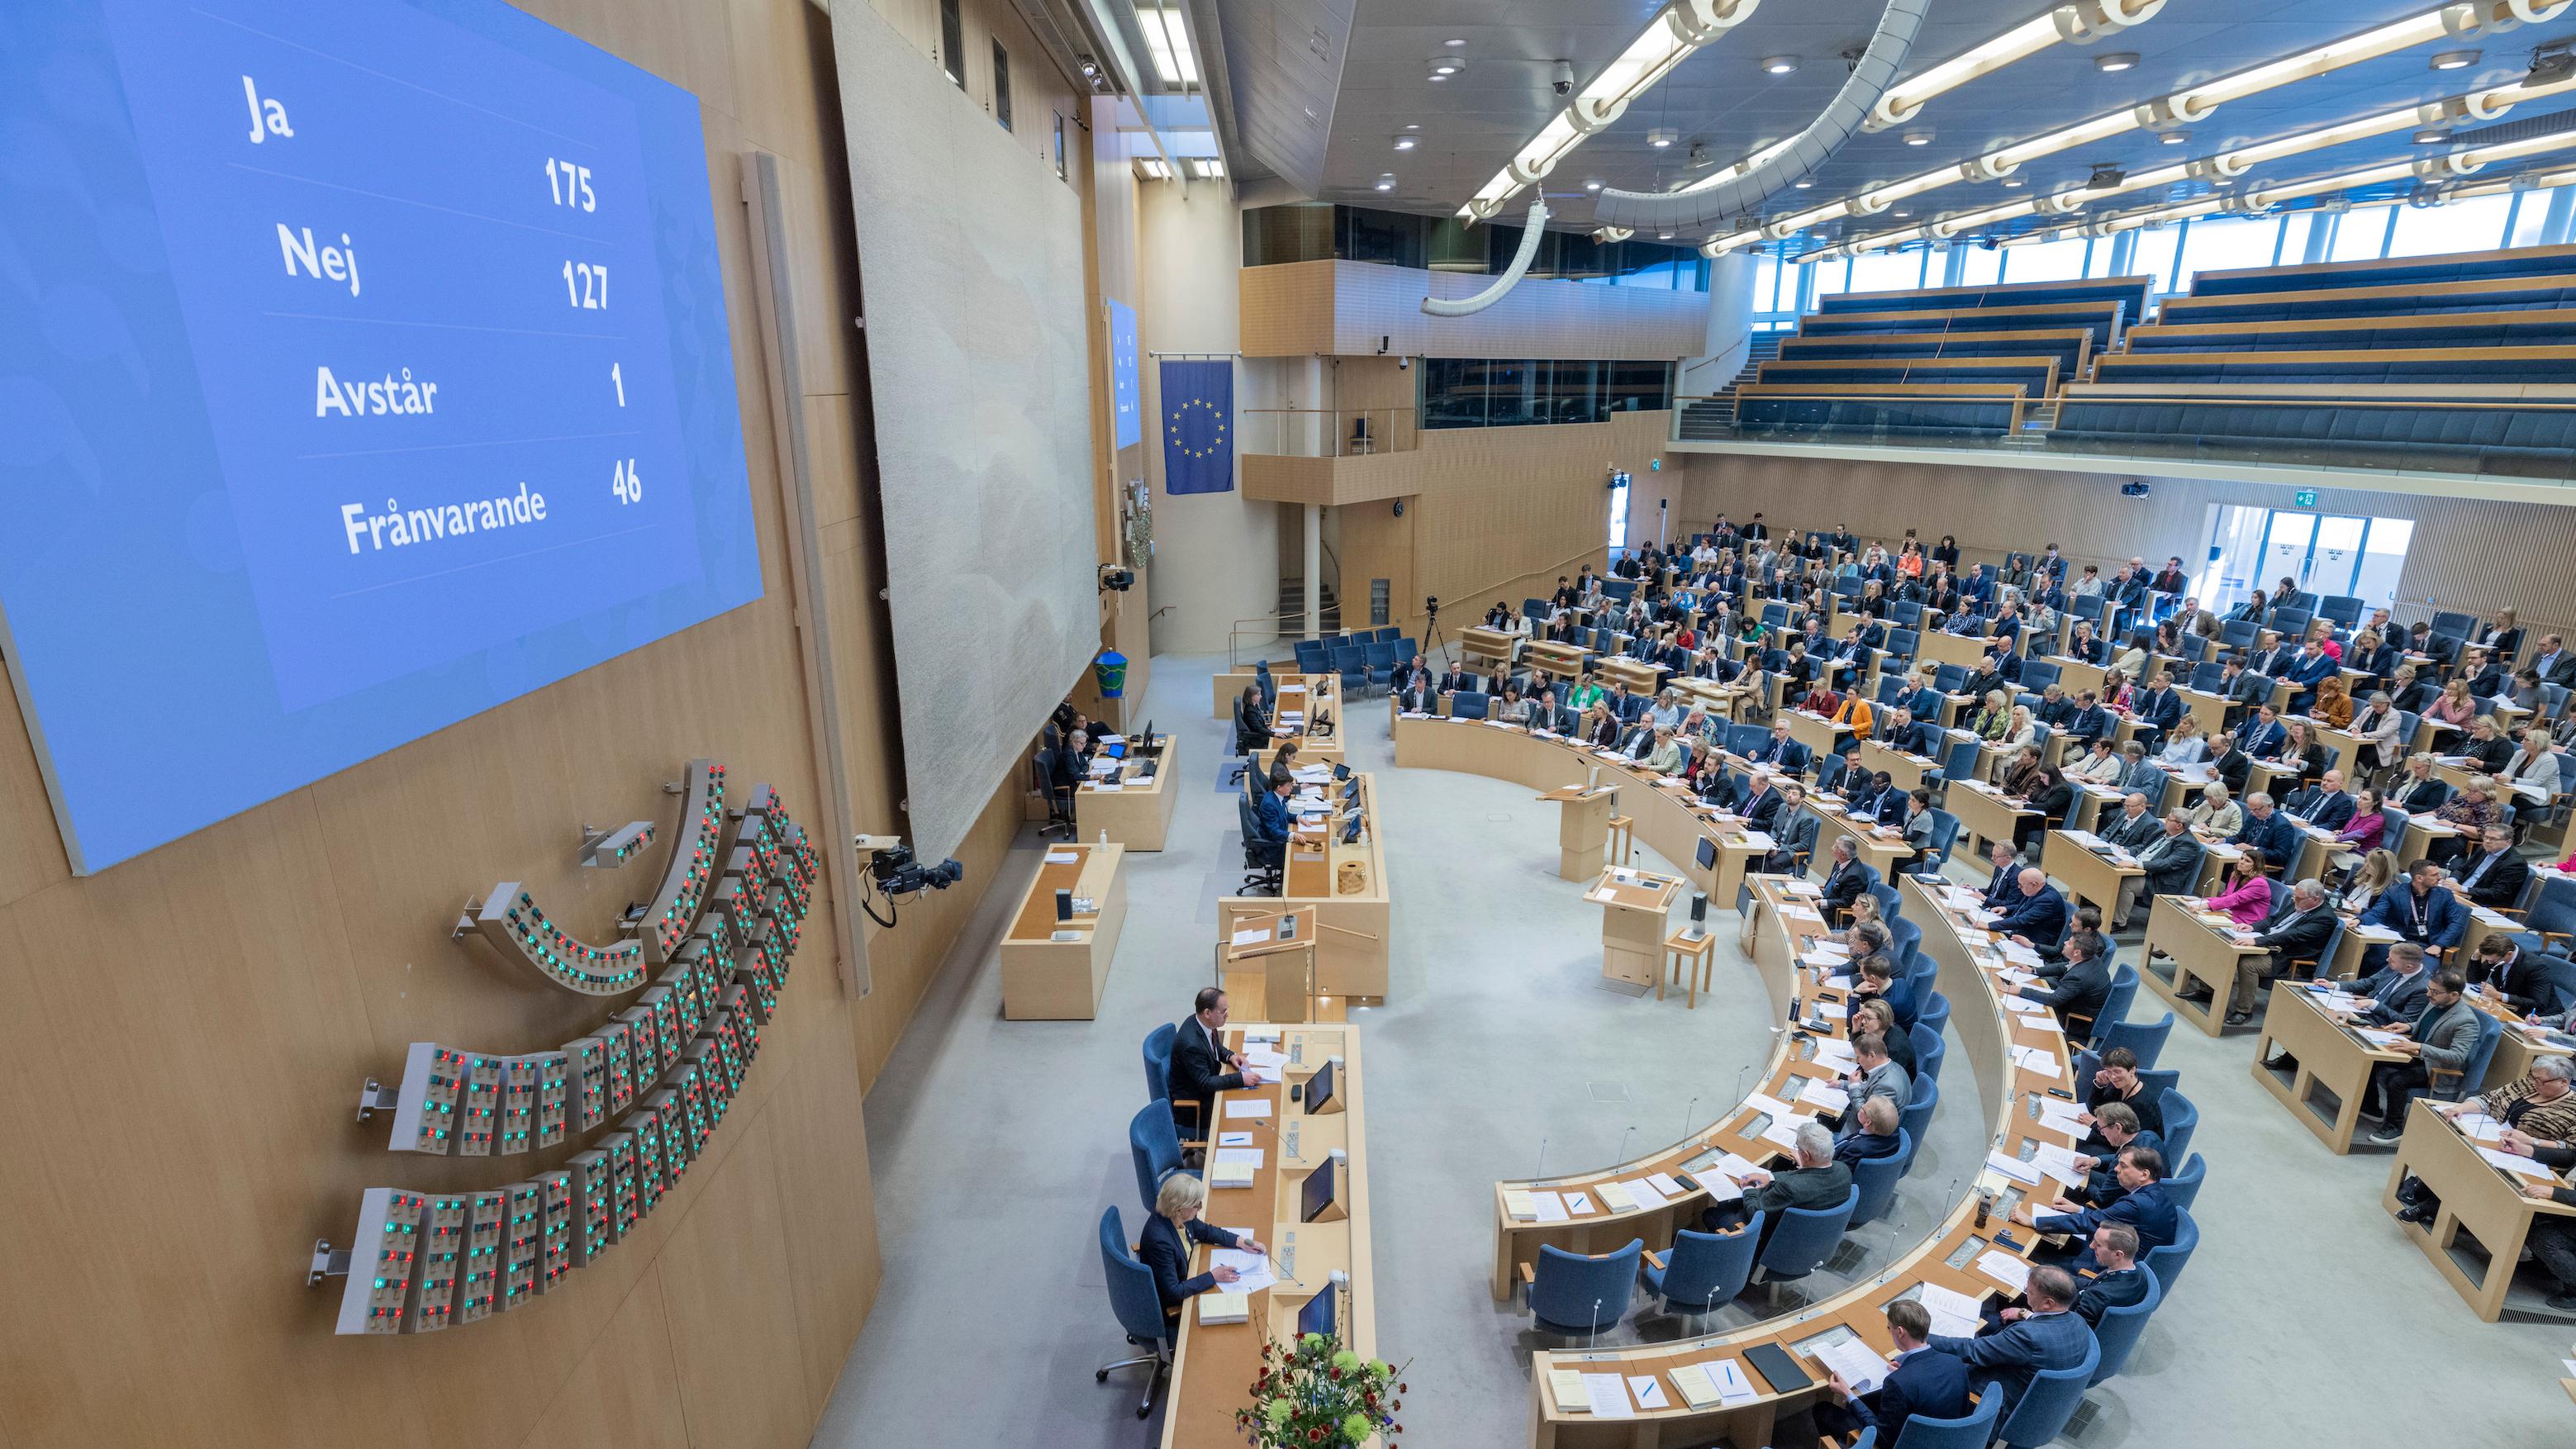 Riksdagen ska ta ställning till den nya könstillhörighetslagen, som väckt stor debatt. Foto: Melker Dahlstrand/Sveriges riksdag